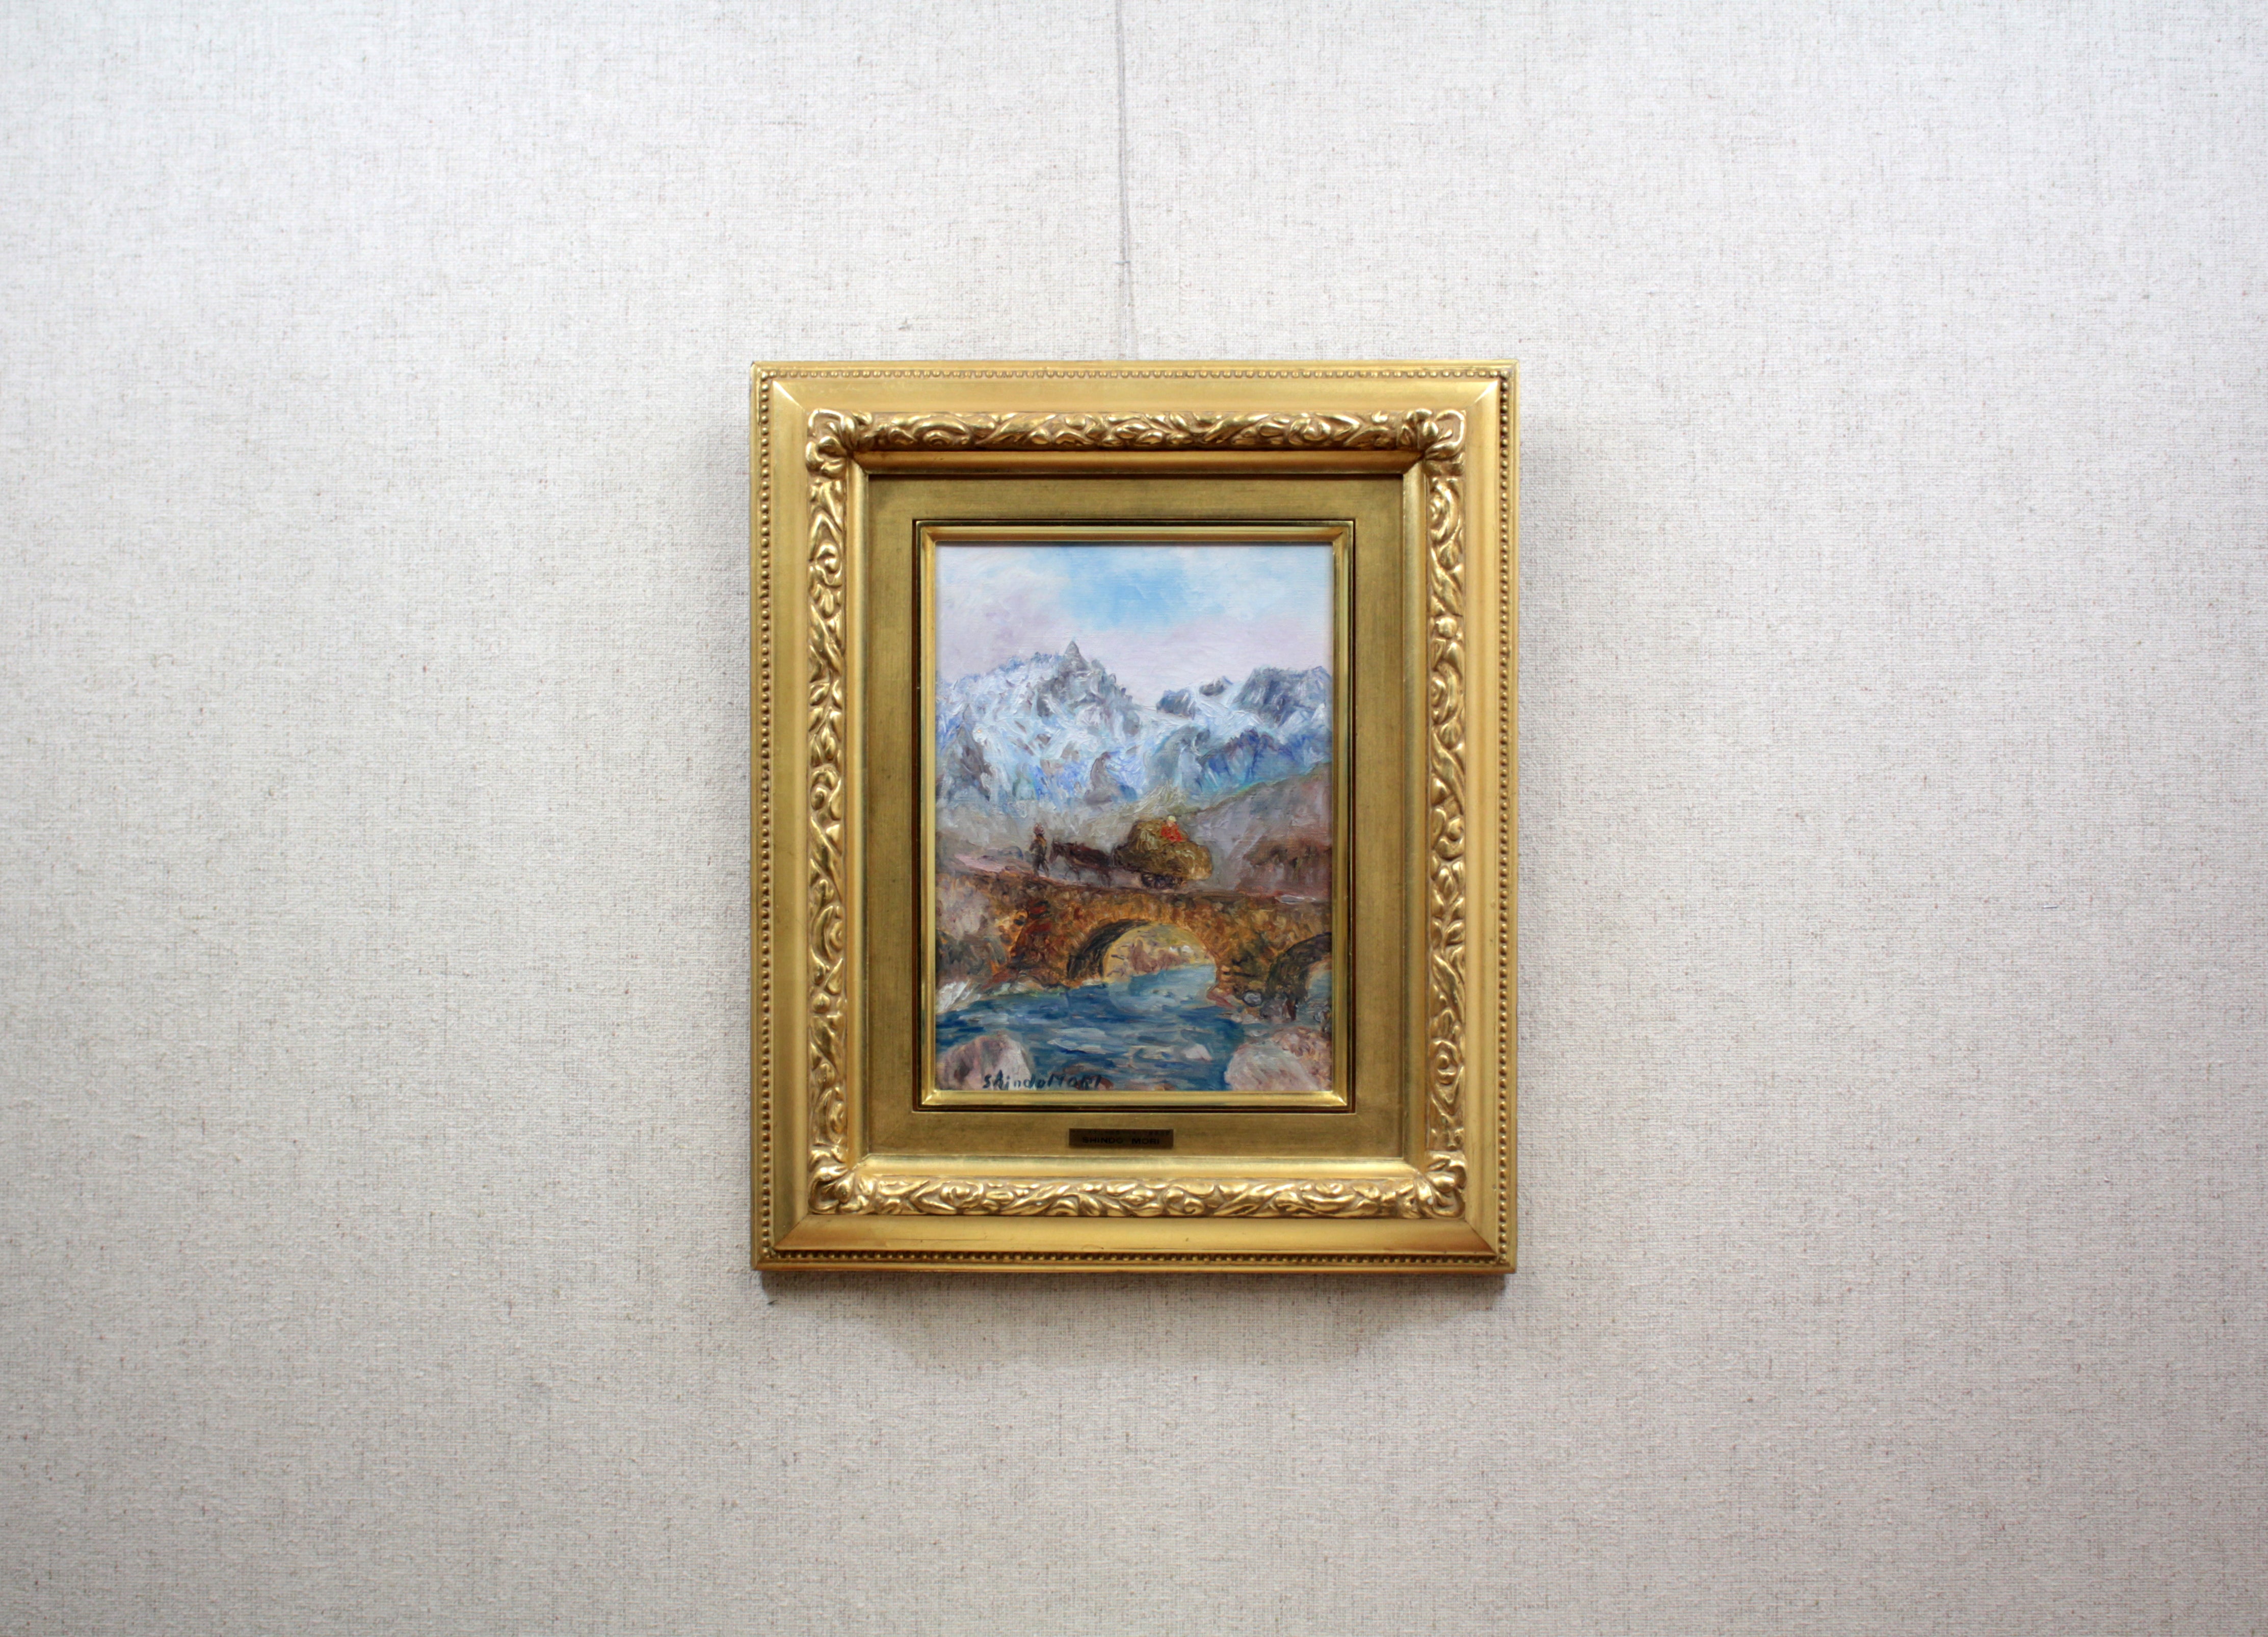 森 真道 『フランス風景 ドフィネの山村』 油彩画 - 北海道画廊